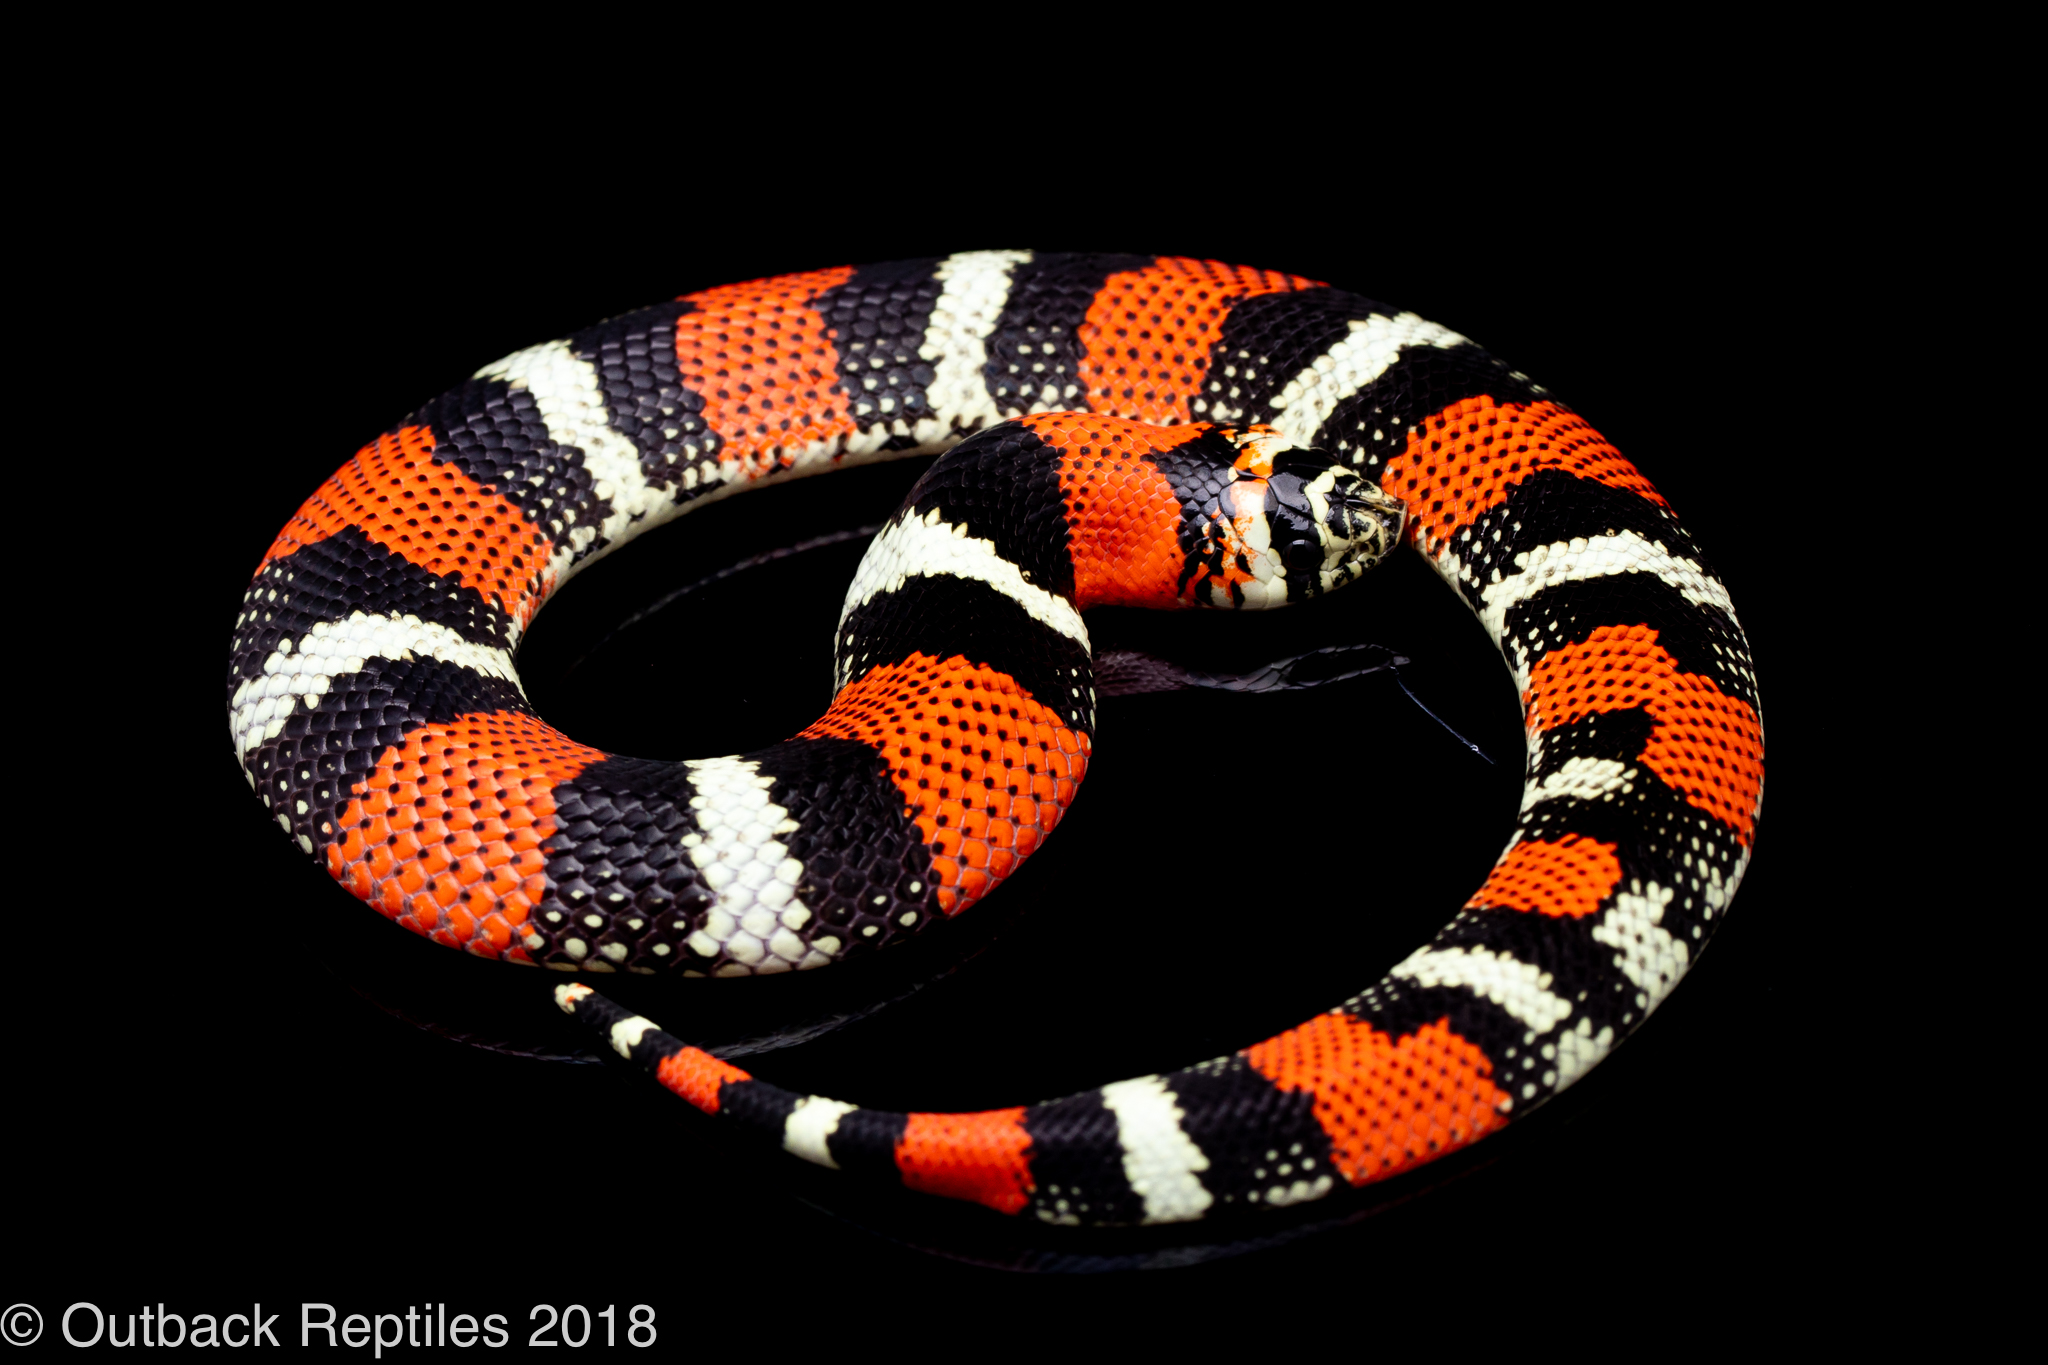 tricolor hognose snake for sale